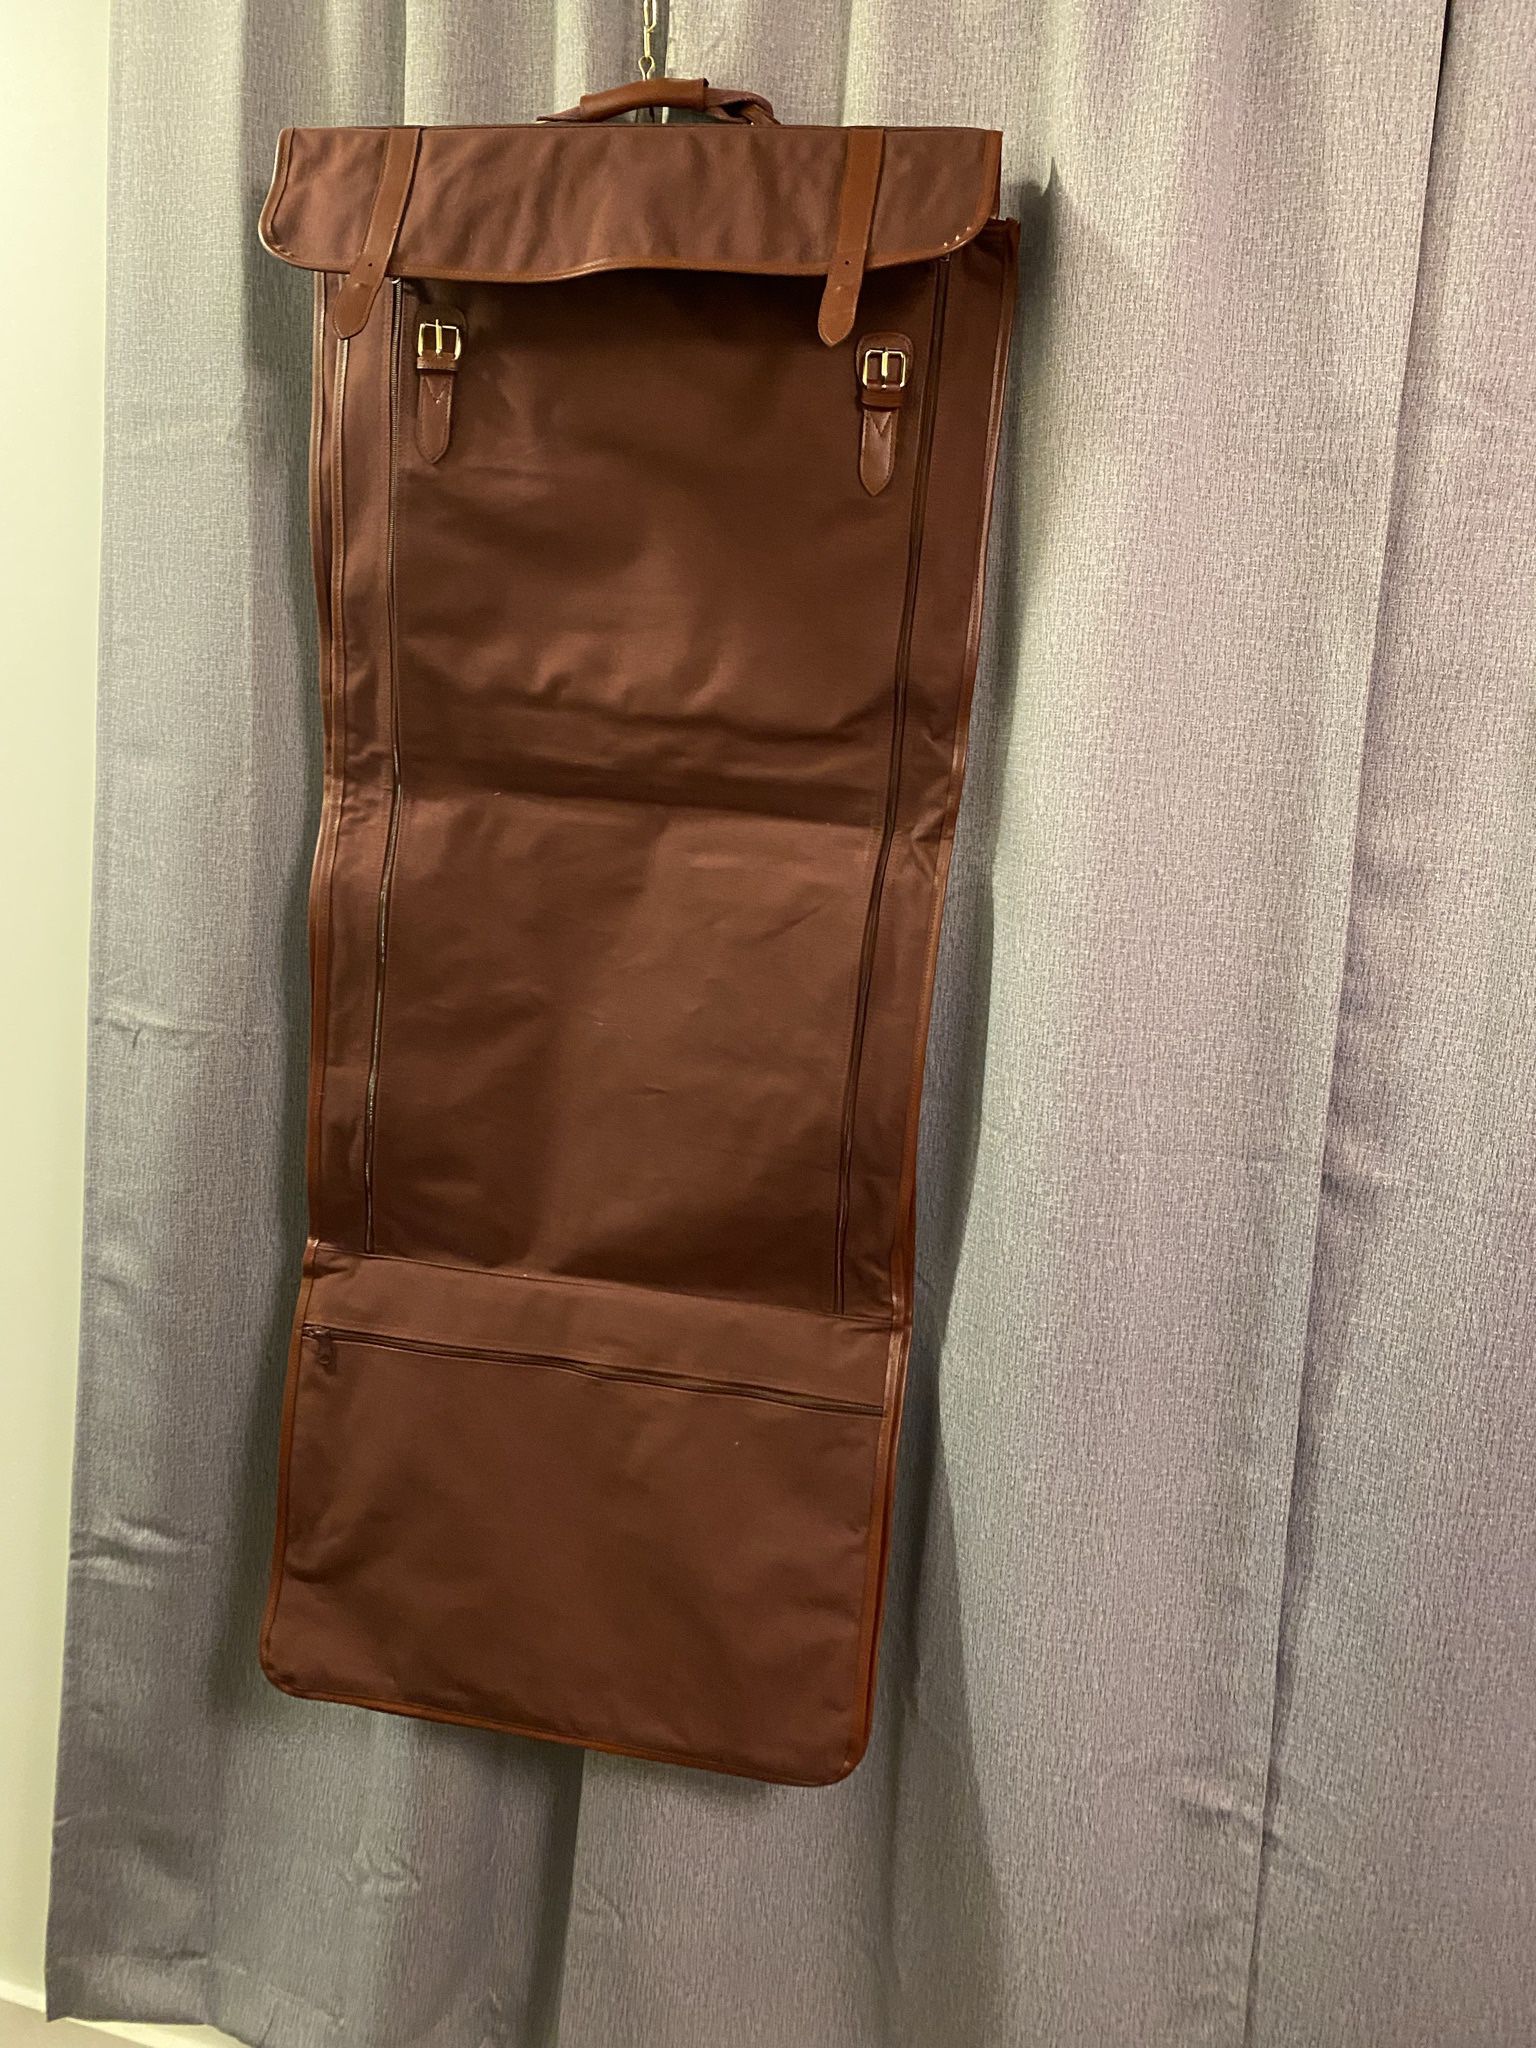 Polo Ralph Lauren Garment Bag/Suitcase